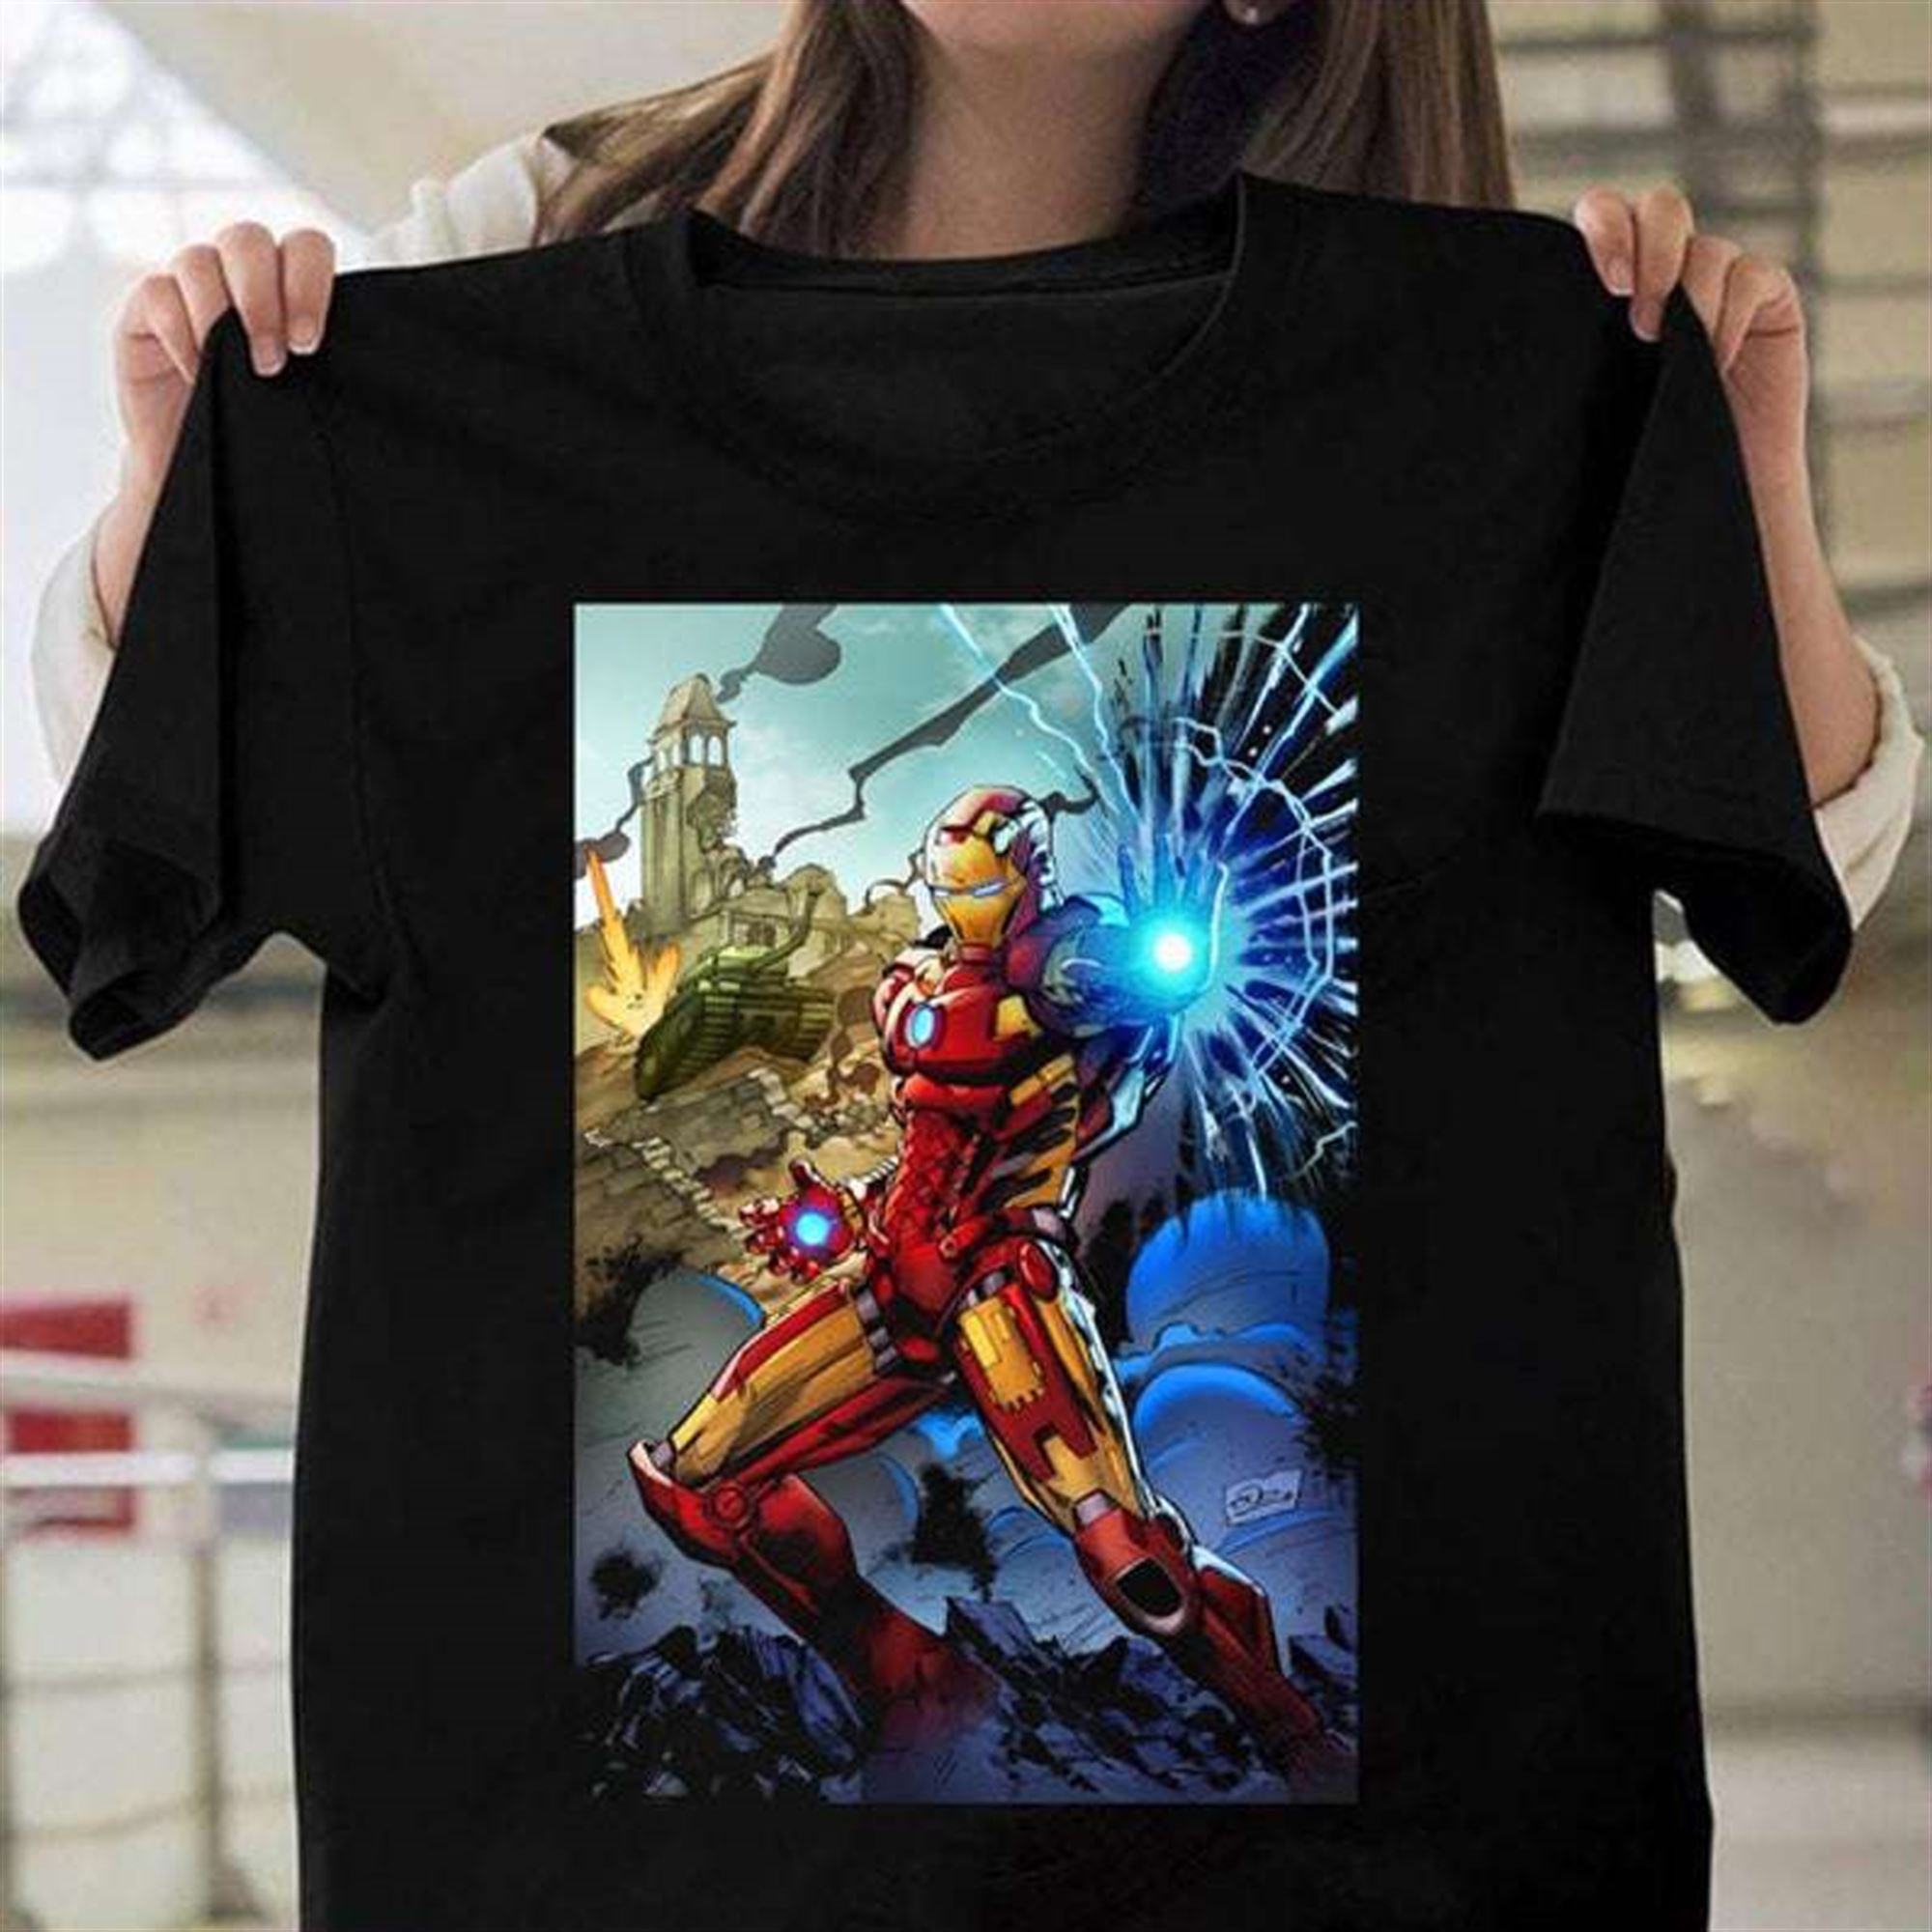 Iron Man Tony Stark T Shirt Full Size Up To 5xl